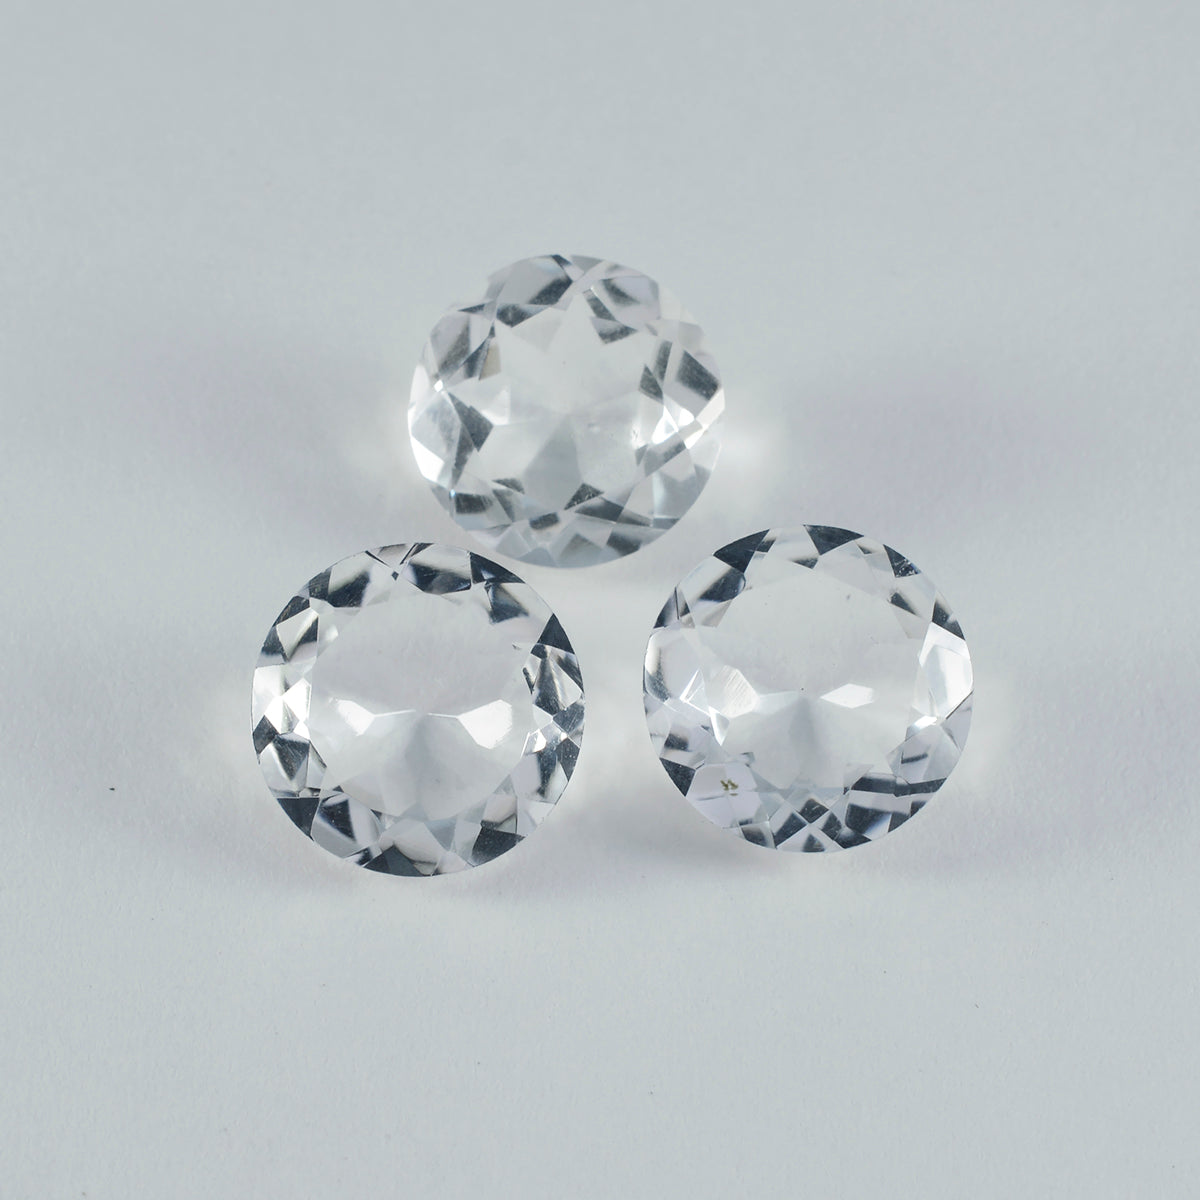 Riyogems 1 Stück weißer Kristallquarz, facettiert, 14 x 14 mm, runde Form, schöner Qualitätsstein